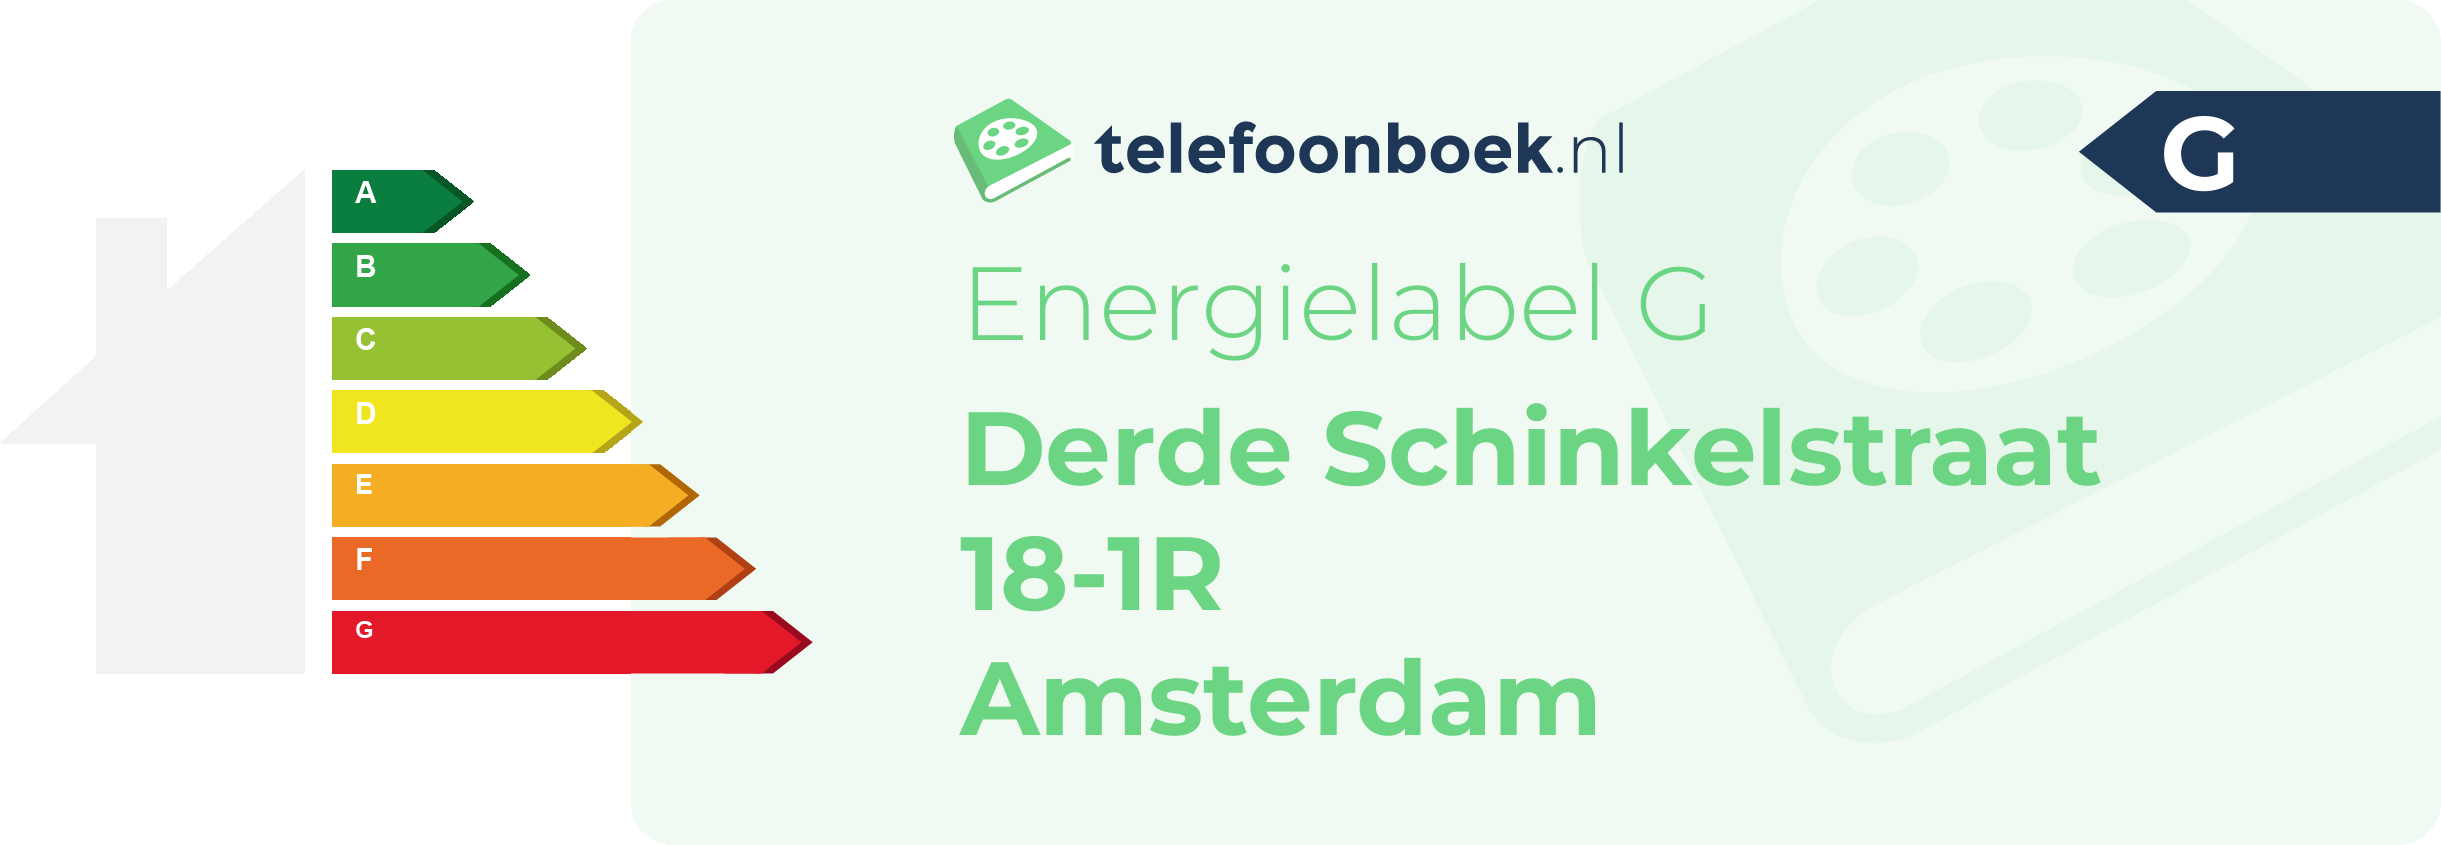 Energielabel Derde Schinkelstraat 18-1R Amsterdam